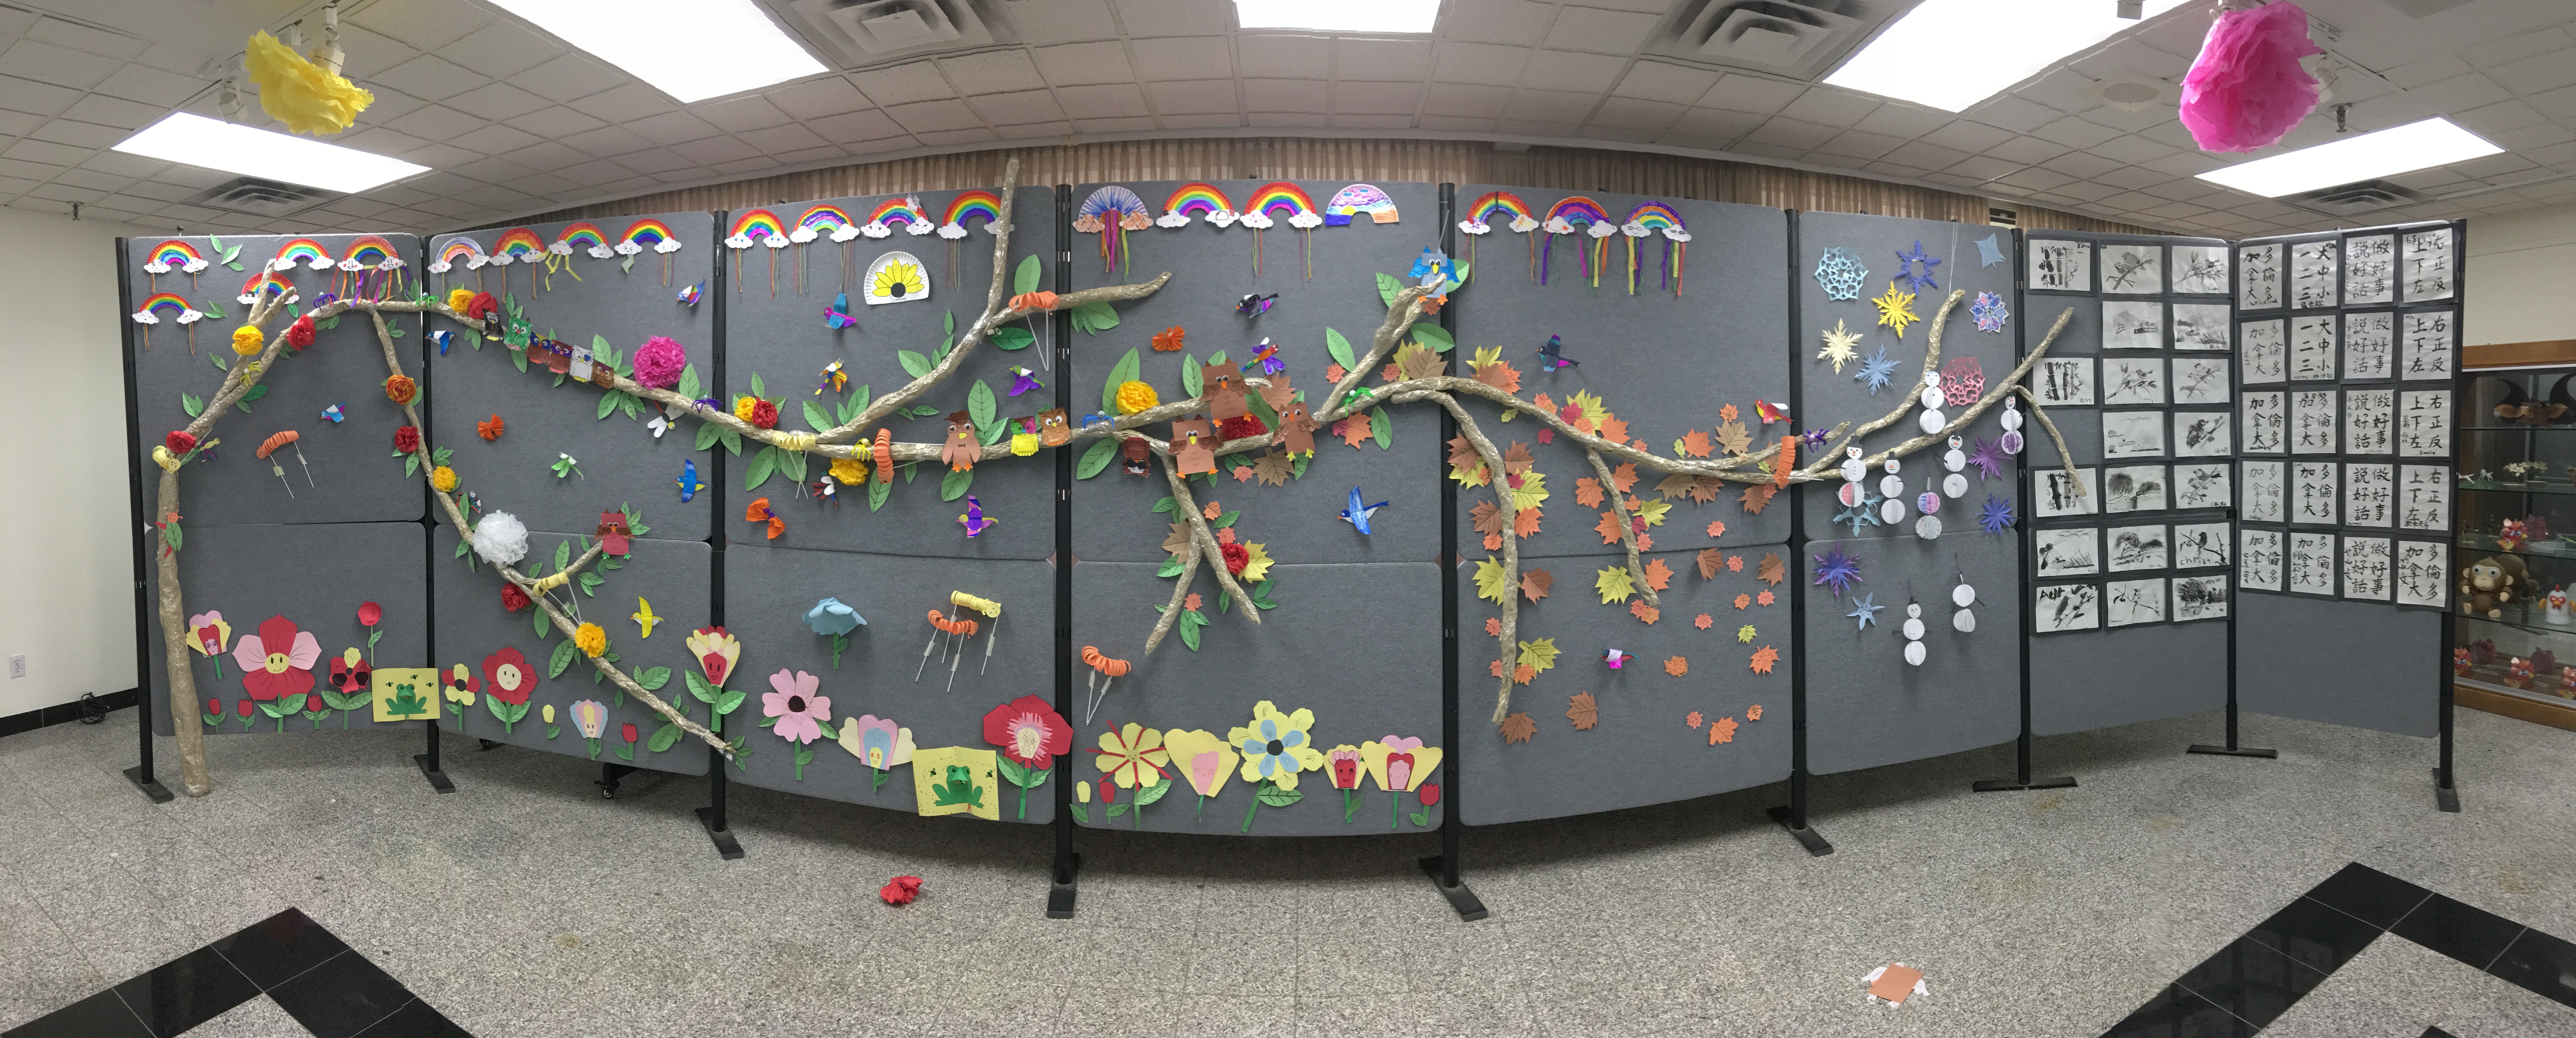 學員以「四季花園」為主題的美工剪紙裝飾及布置藝術課程成果展現。